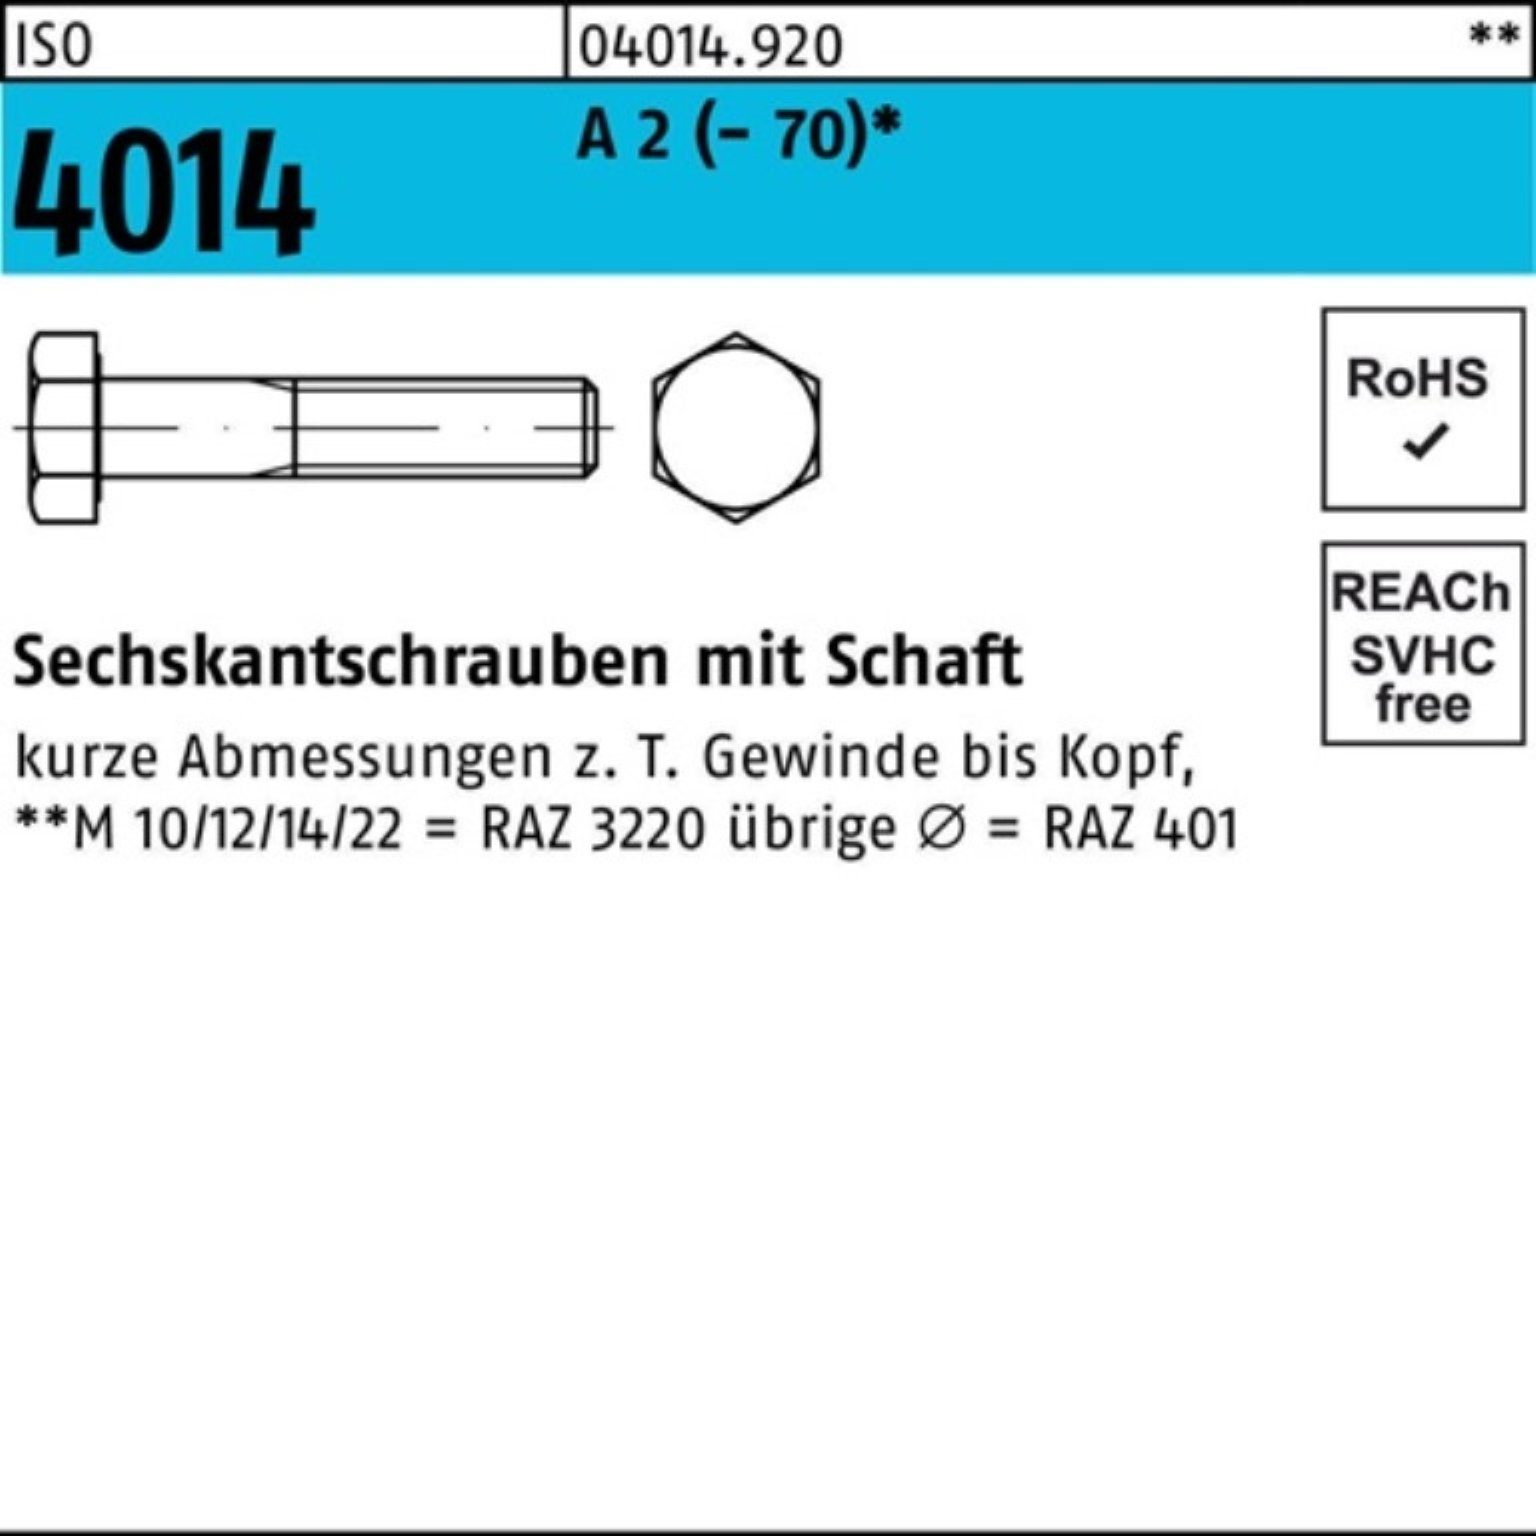 Bufab Sechskantschraube 100er Pack Sechskantschraube ISO 4014 Schaft M12x 170 A 2 (70) 1 St